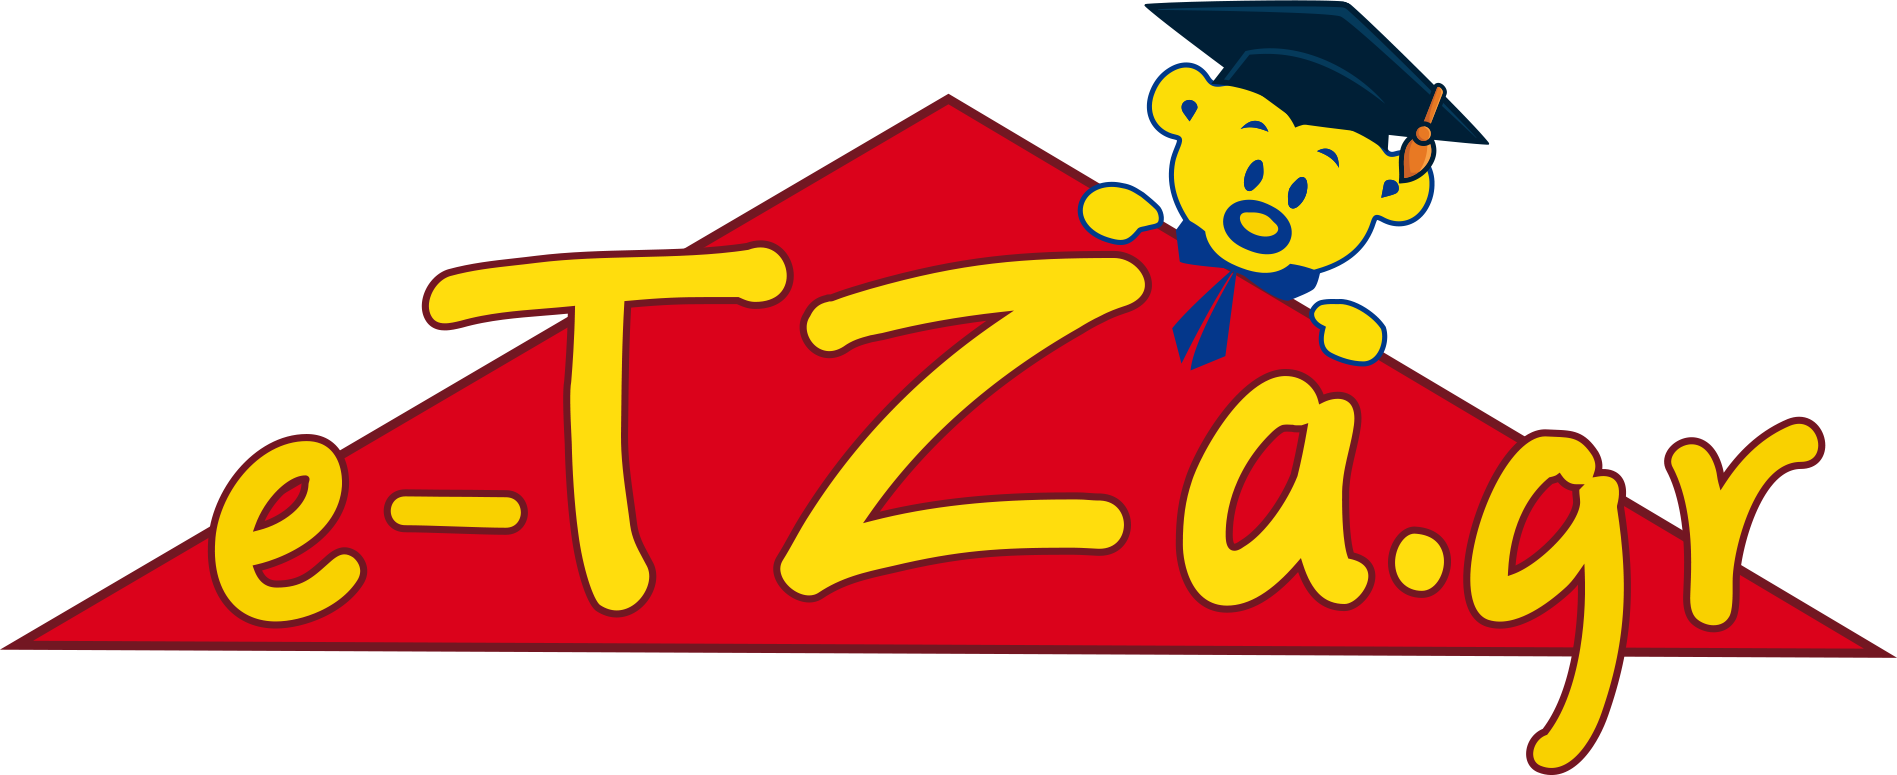 e-tza.gr Ηλεκτρονικό Κατάστημα Παιχνιδιών